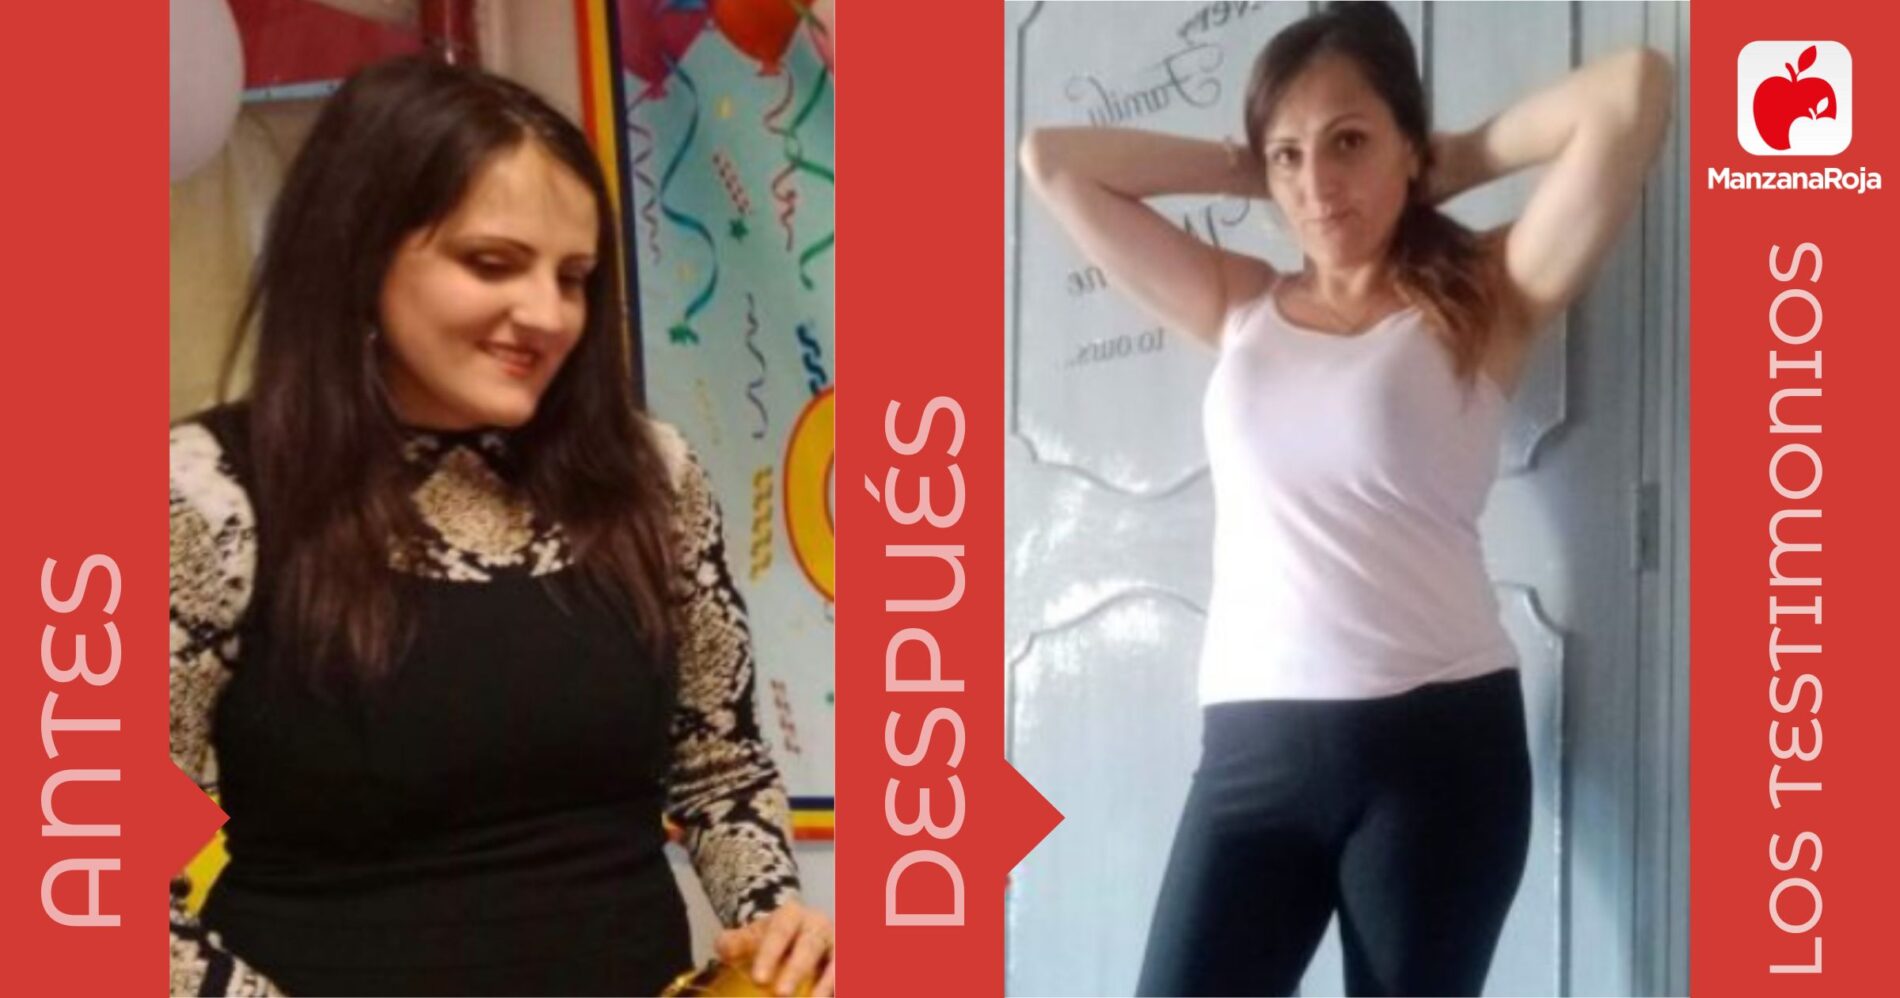 Raquel antes y después de usar la app ManzanaRoja para perder peso